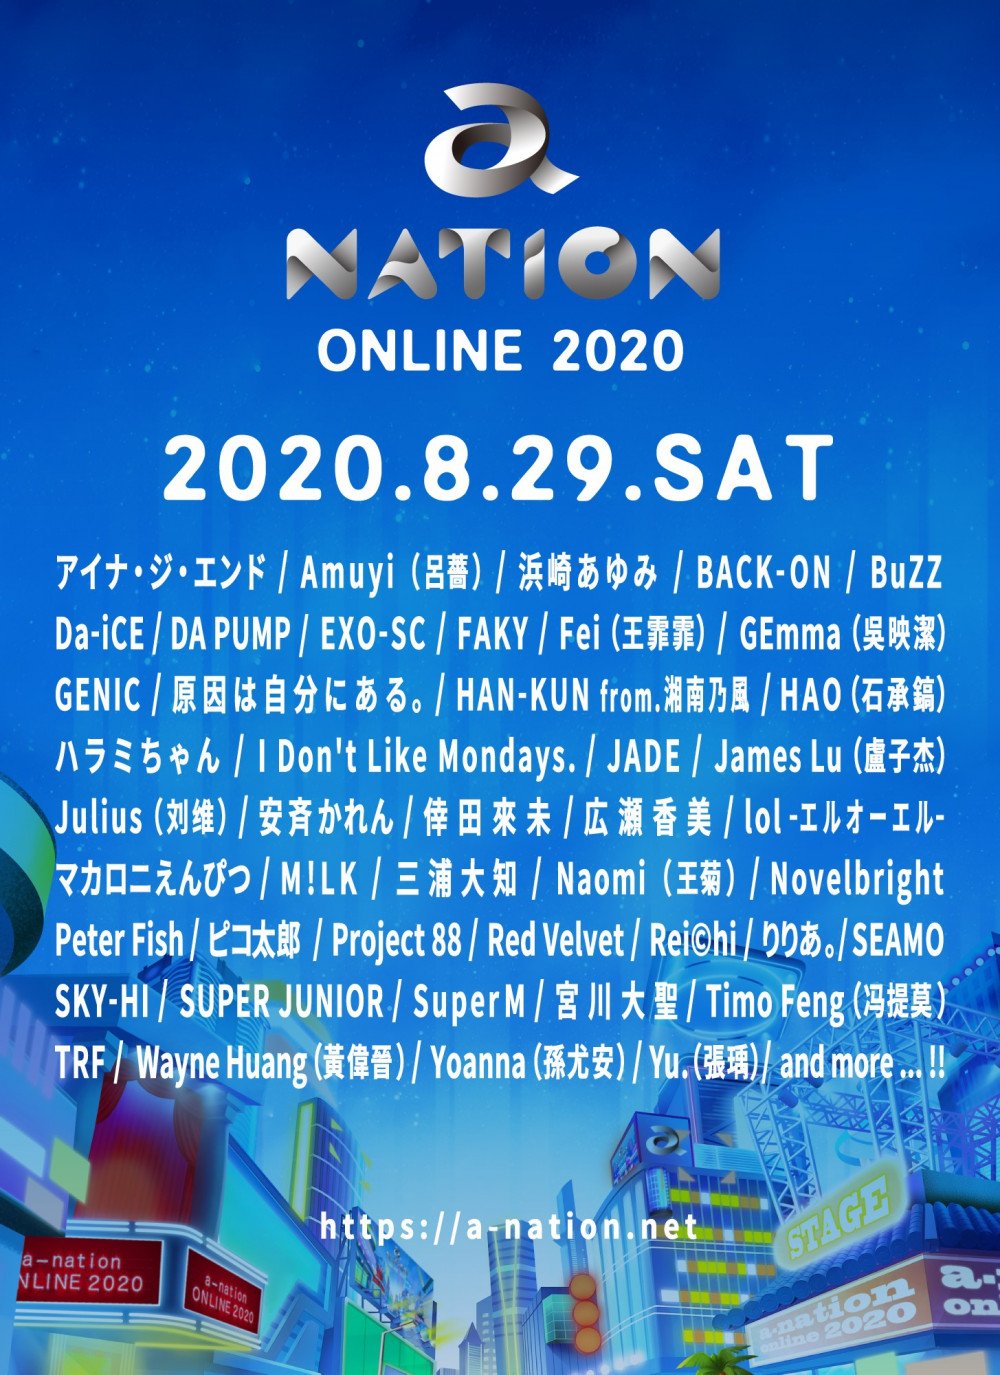 Организаторы "a-nation Online 2020" представили первый состав выступающих артистов